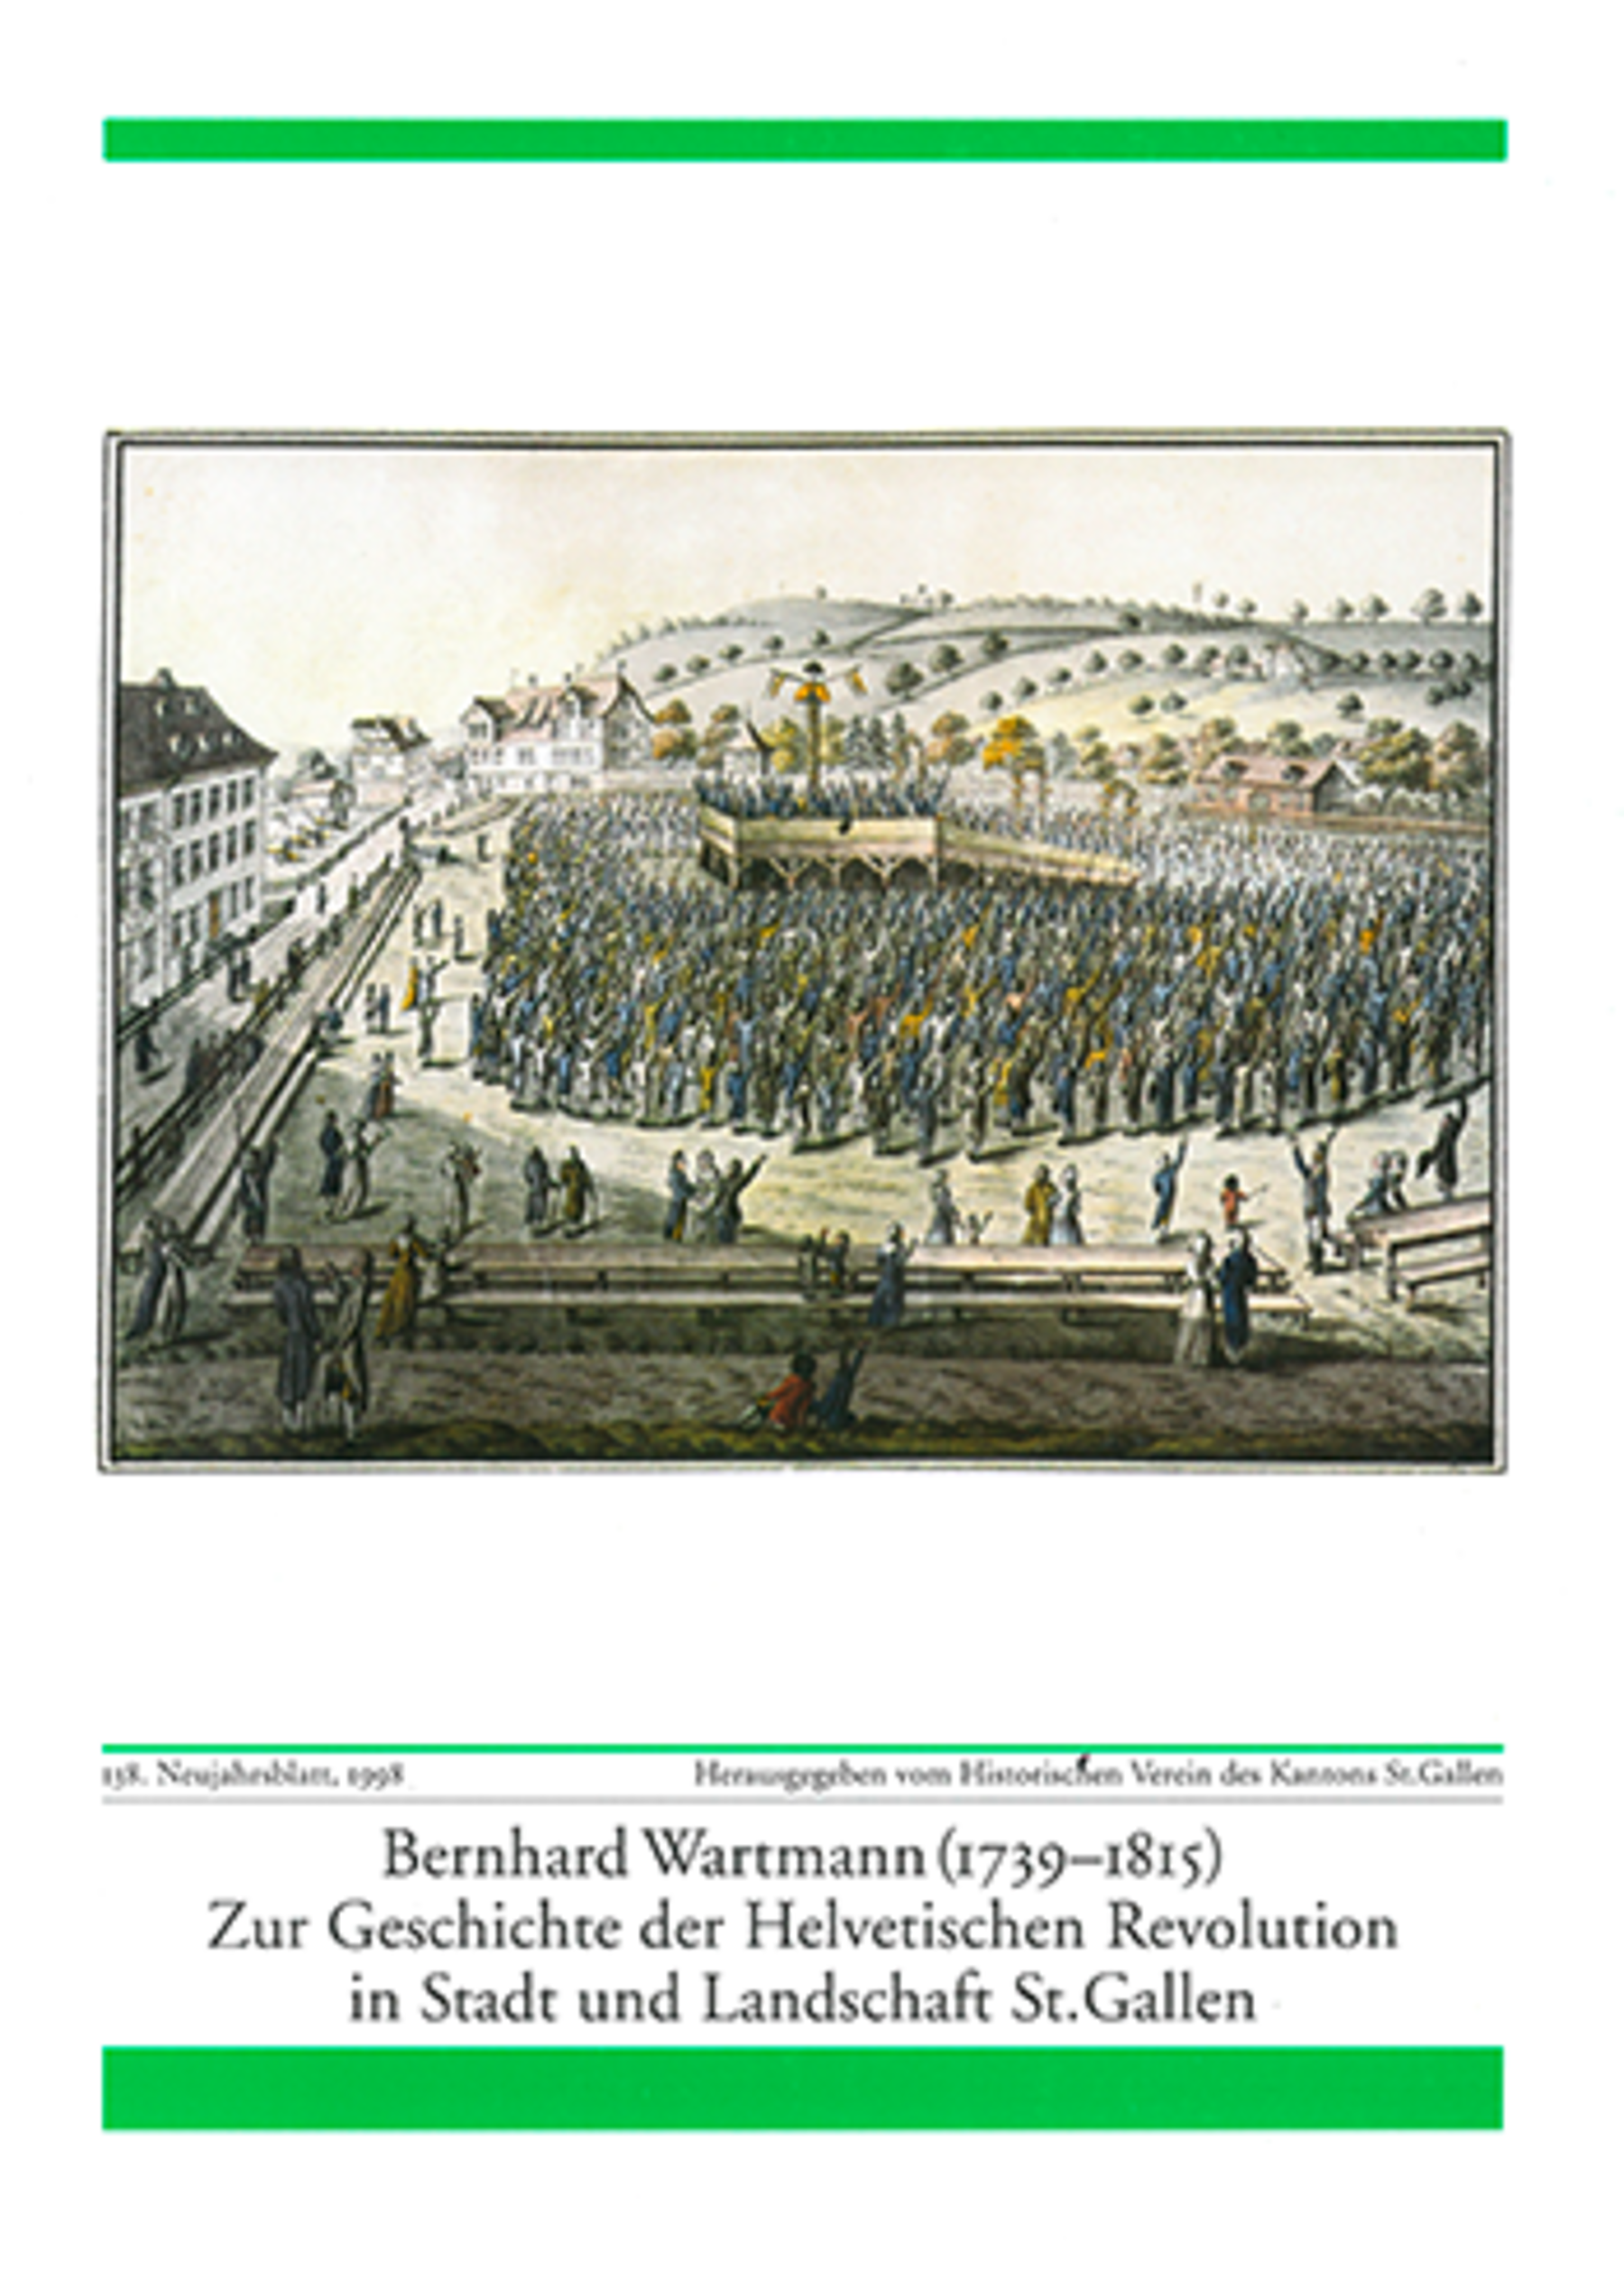 Bernhard Wartmann (1739-1815) - Zur Geschichte der Helvetischen Revolution in St